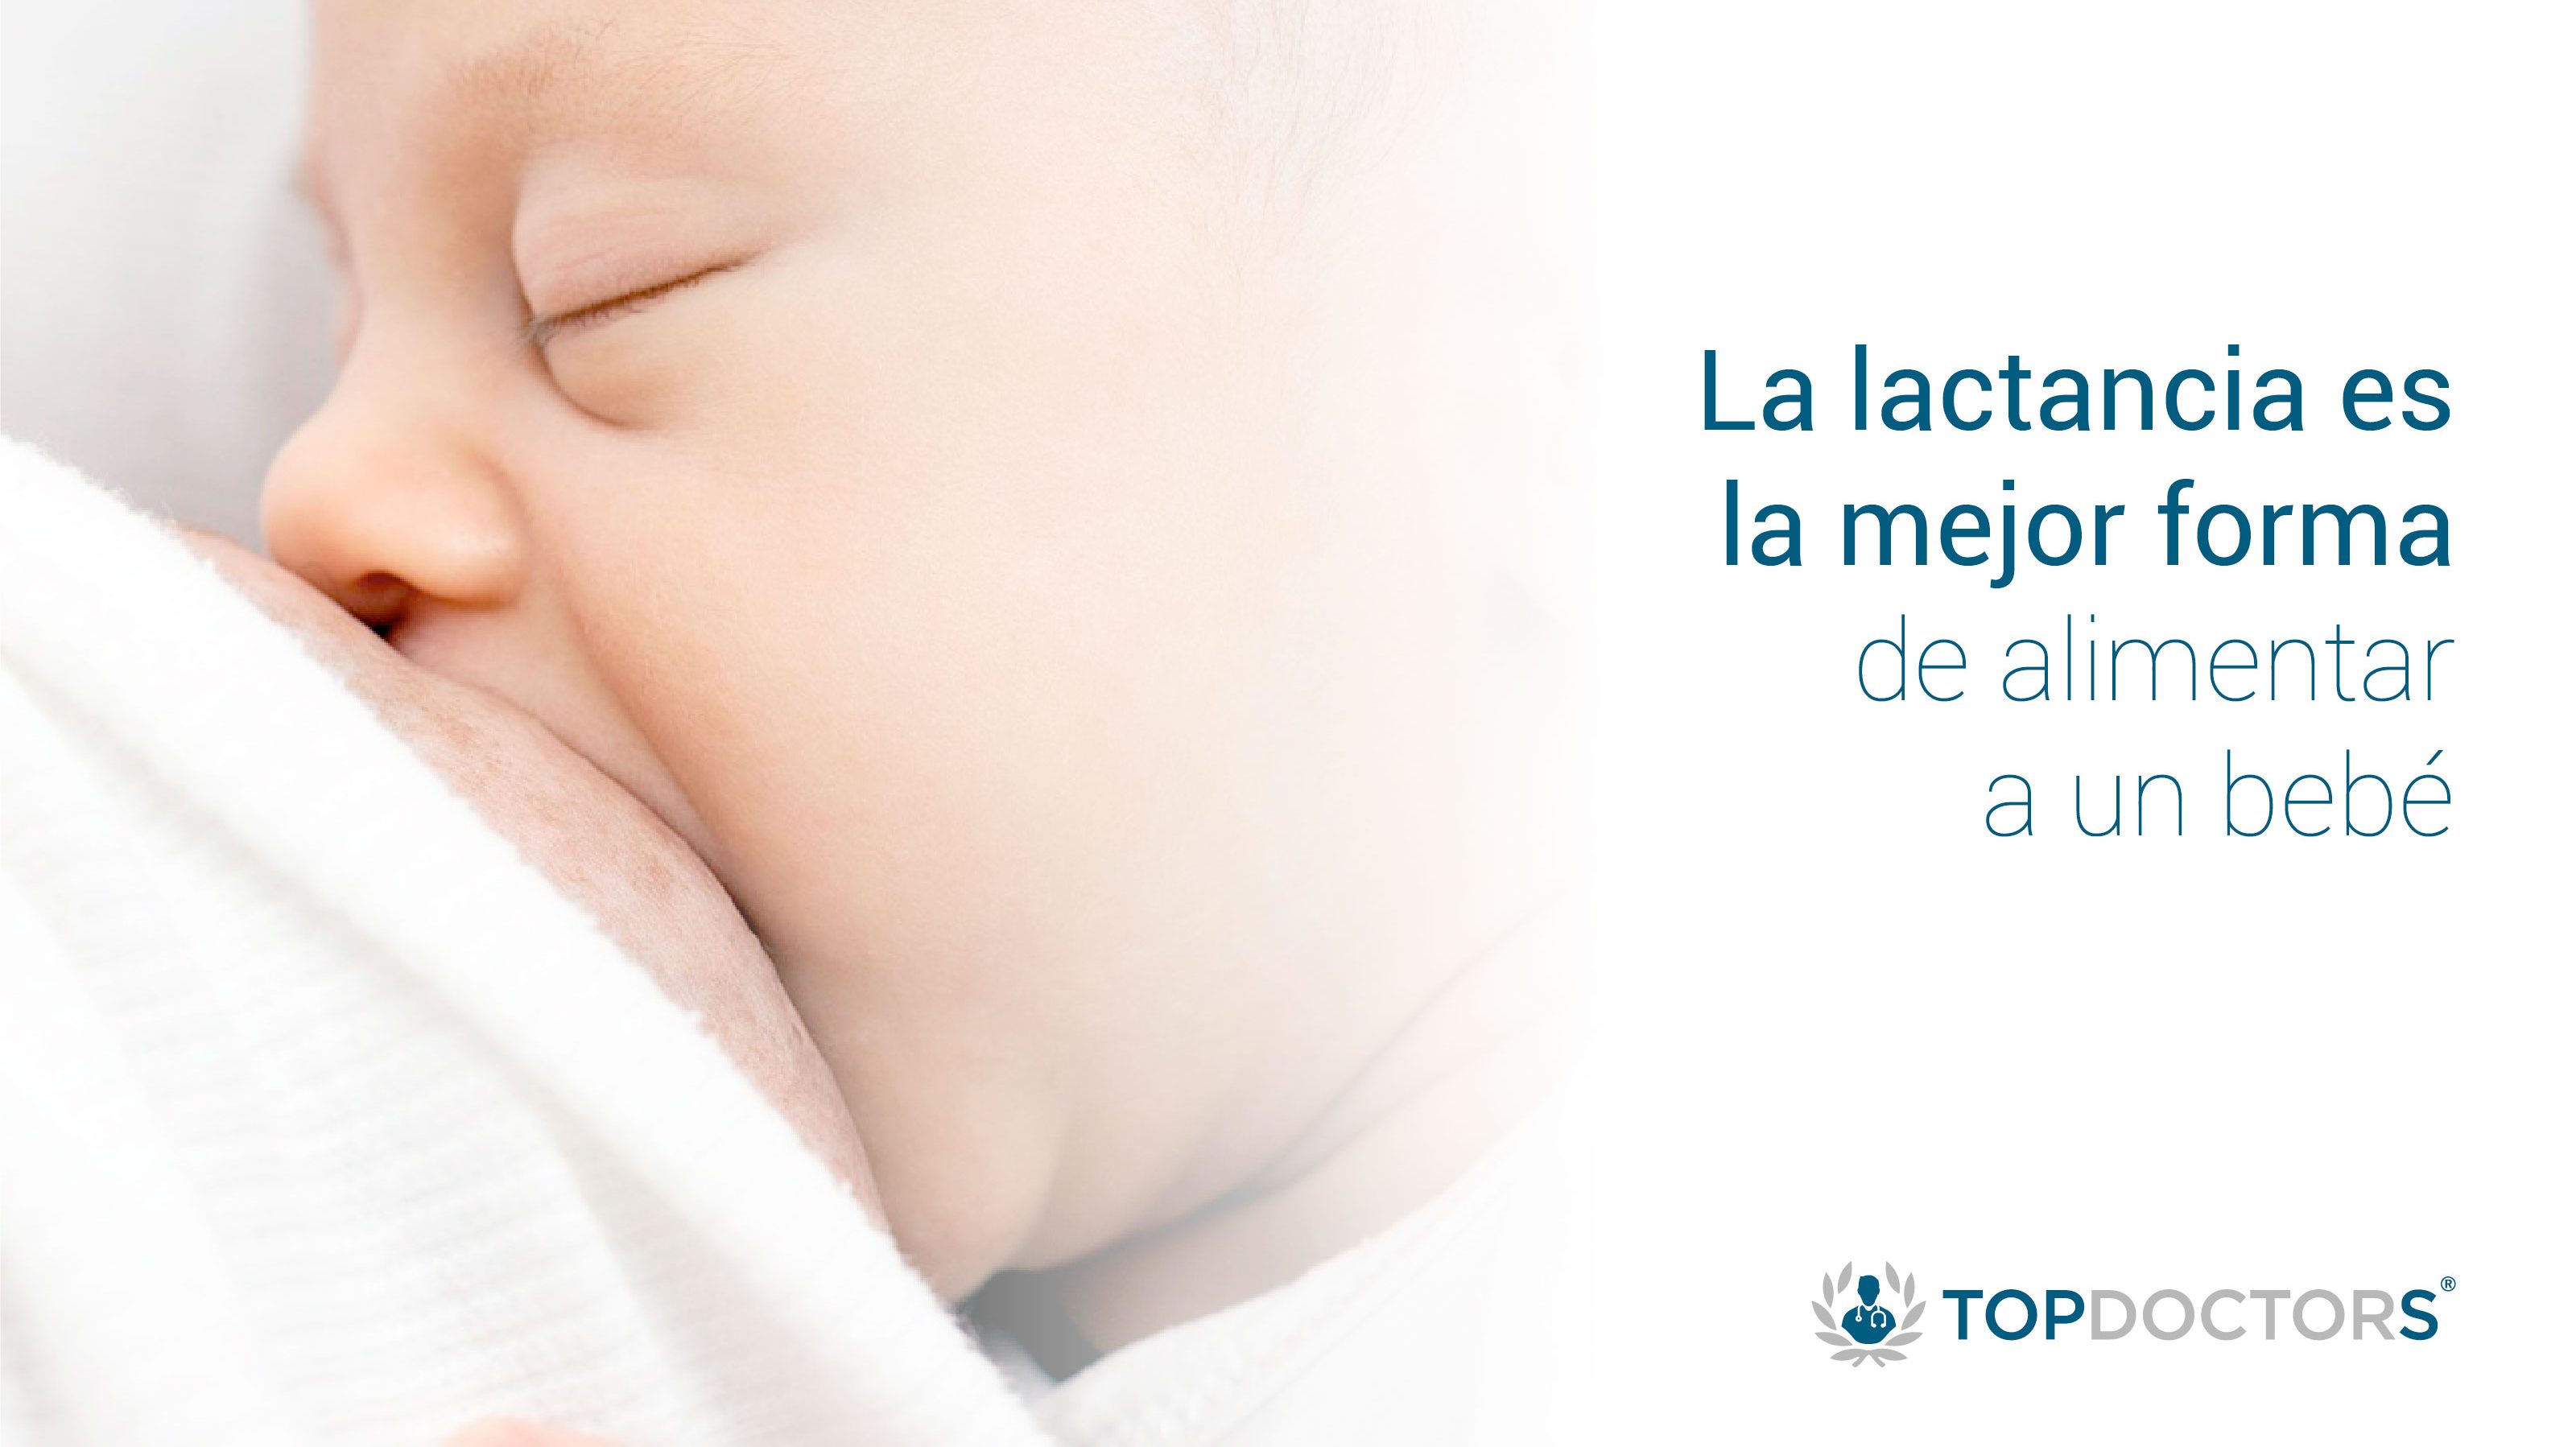 Beneficios que la lactancia aporta a madre e hijo - Top Doctors Blog